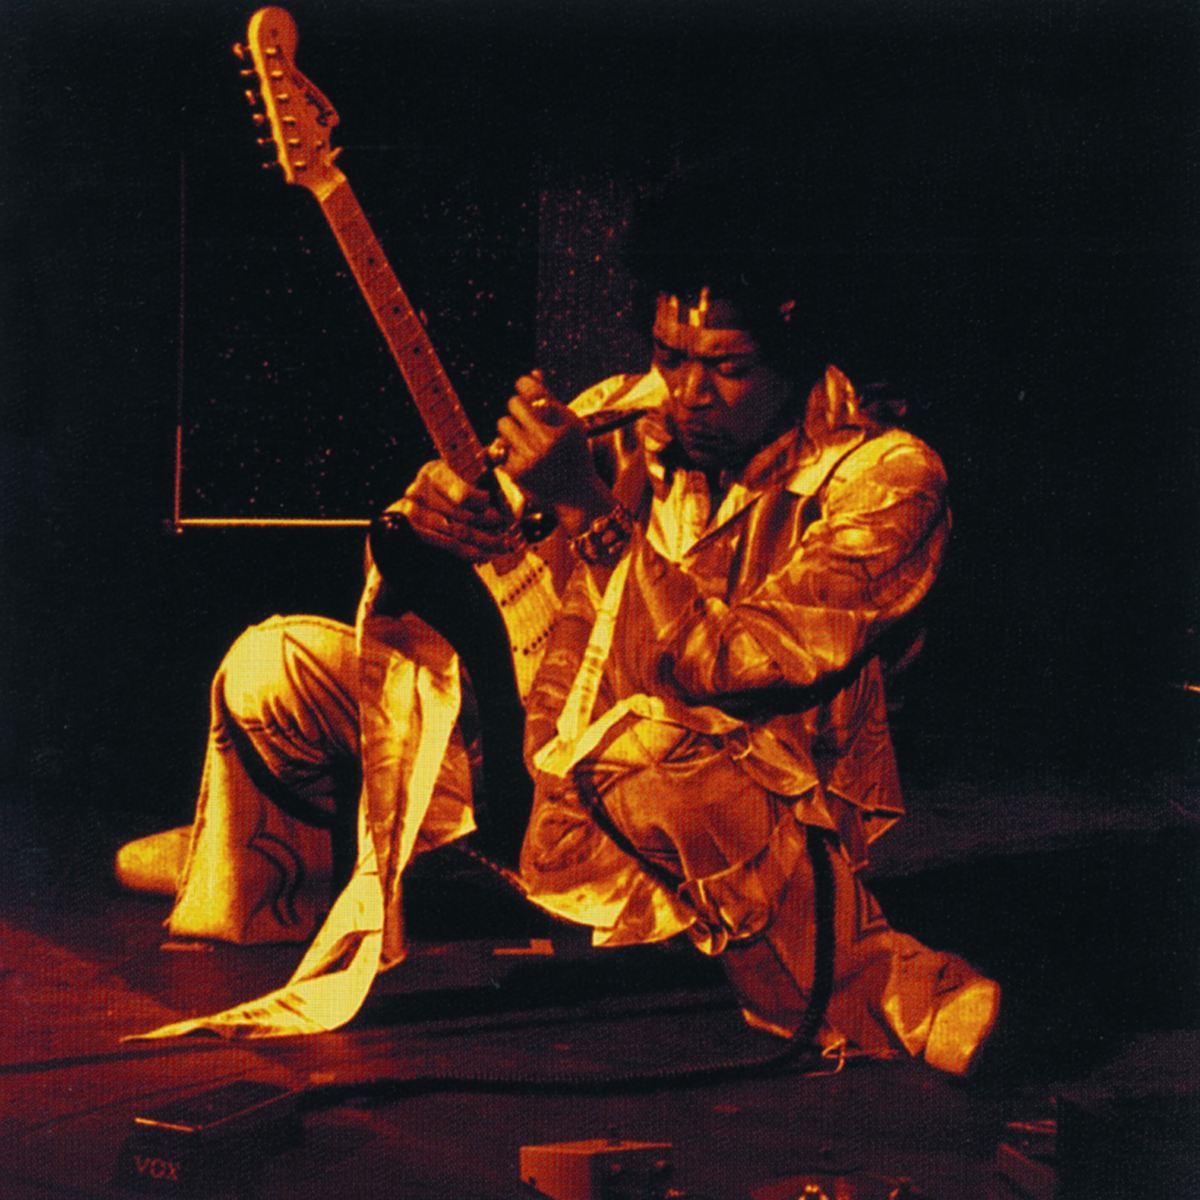 Jimi Hendrix Live At The Fillmore East